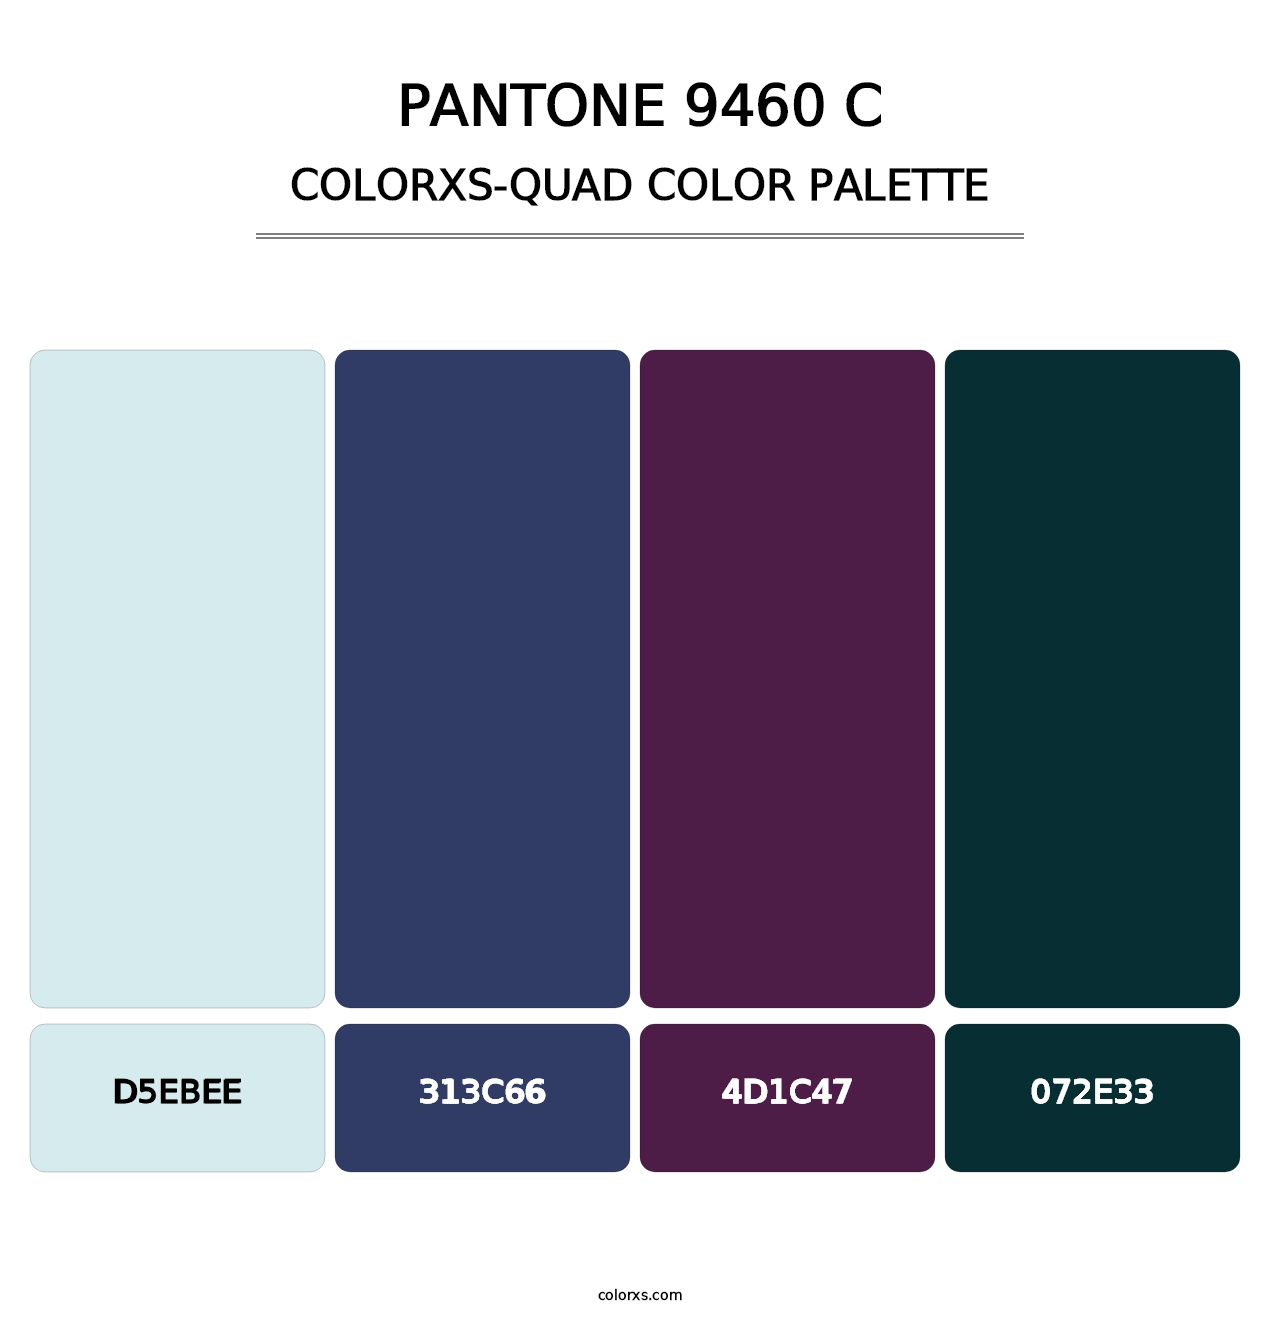 PANTONE 9460 C - Colorxs Quad Palette